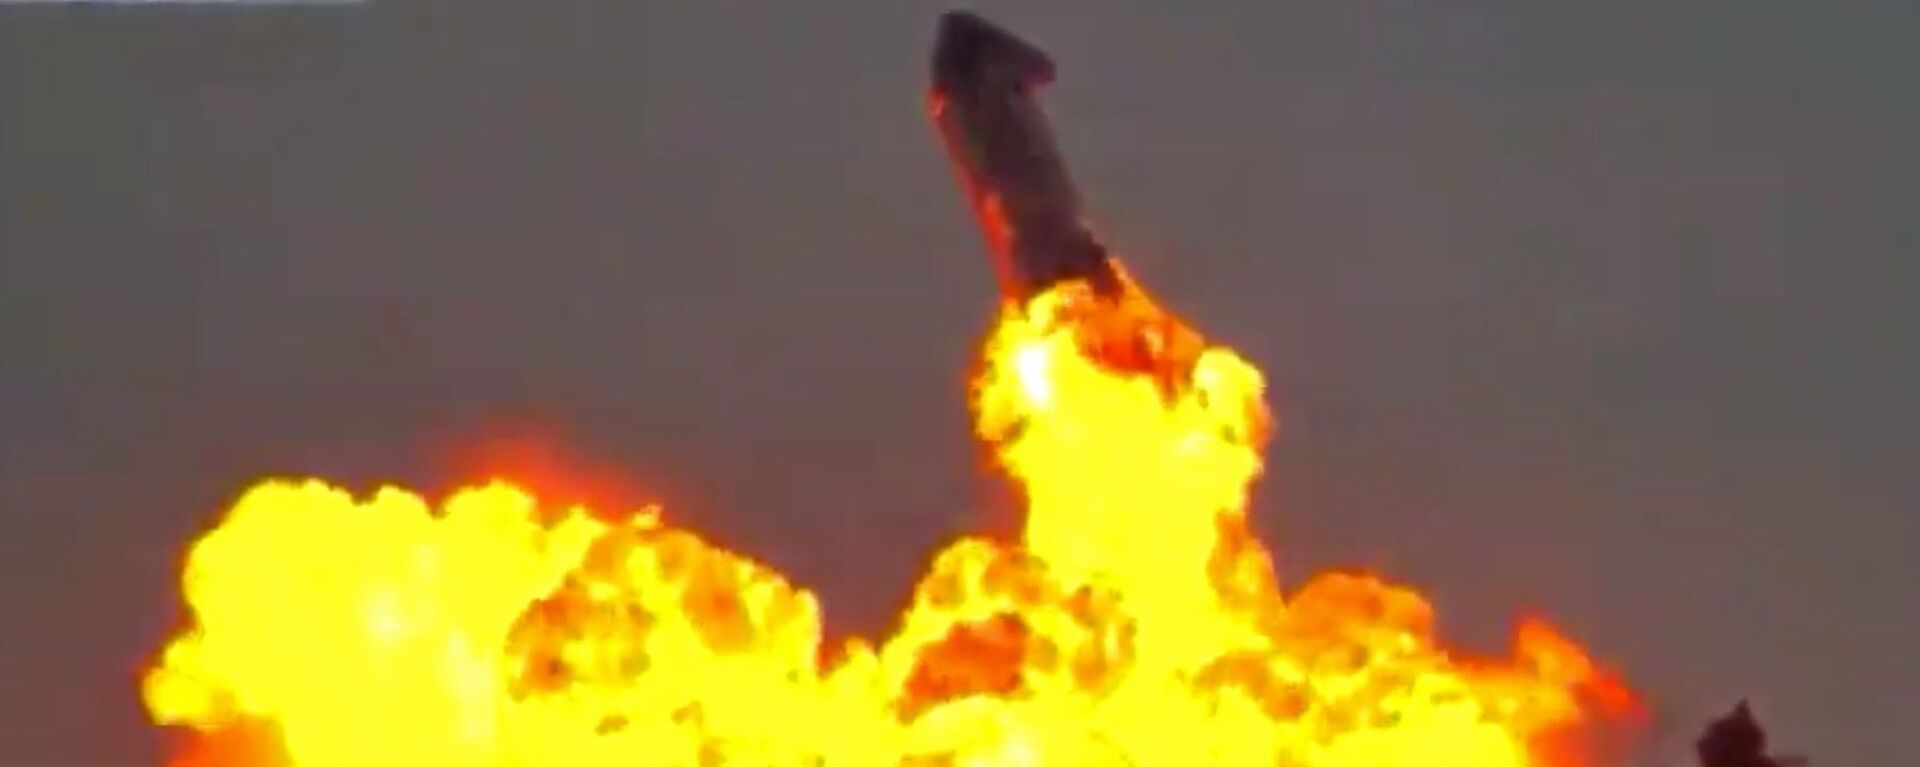 Momento exato em que o protótipo SN10 Starship explode após aterrissagem bem-sucedida nas instalações da SpaceX em Boca Chica, no Texas - Sputnik Brasil, 1920, 30.03.2021